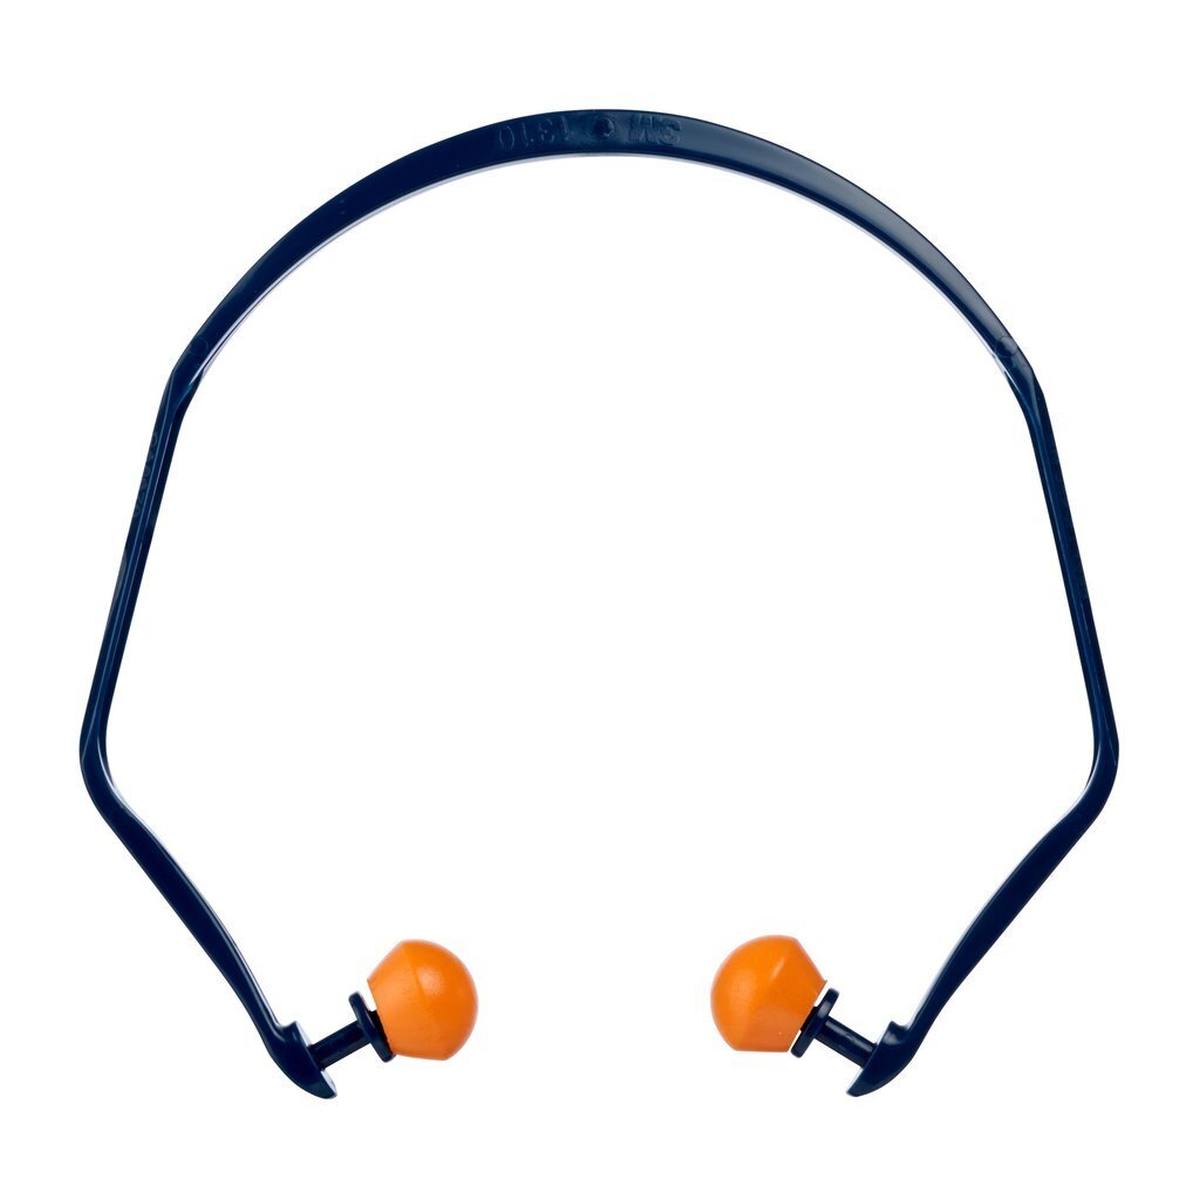 Protectores auditivos 3M 1310, especialmente cómodos gracias al diseño elástico del auricular, SNR = 26 dB